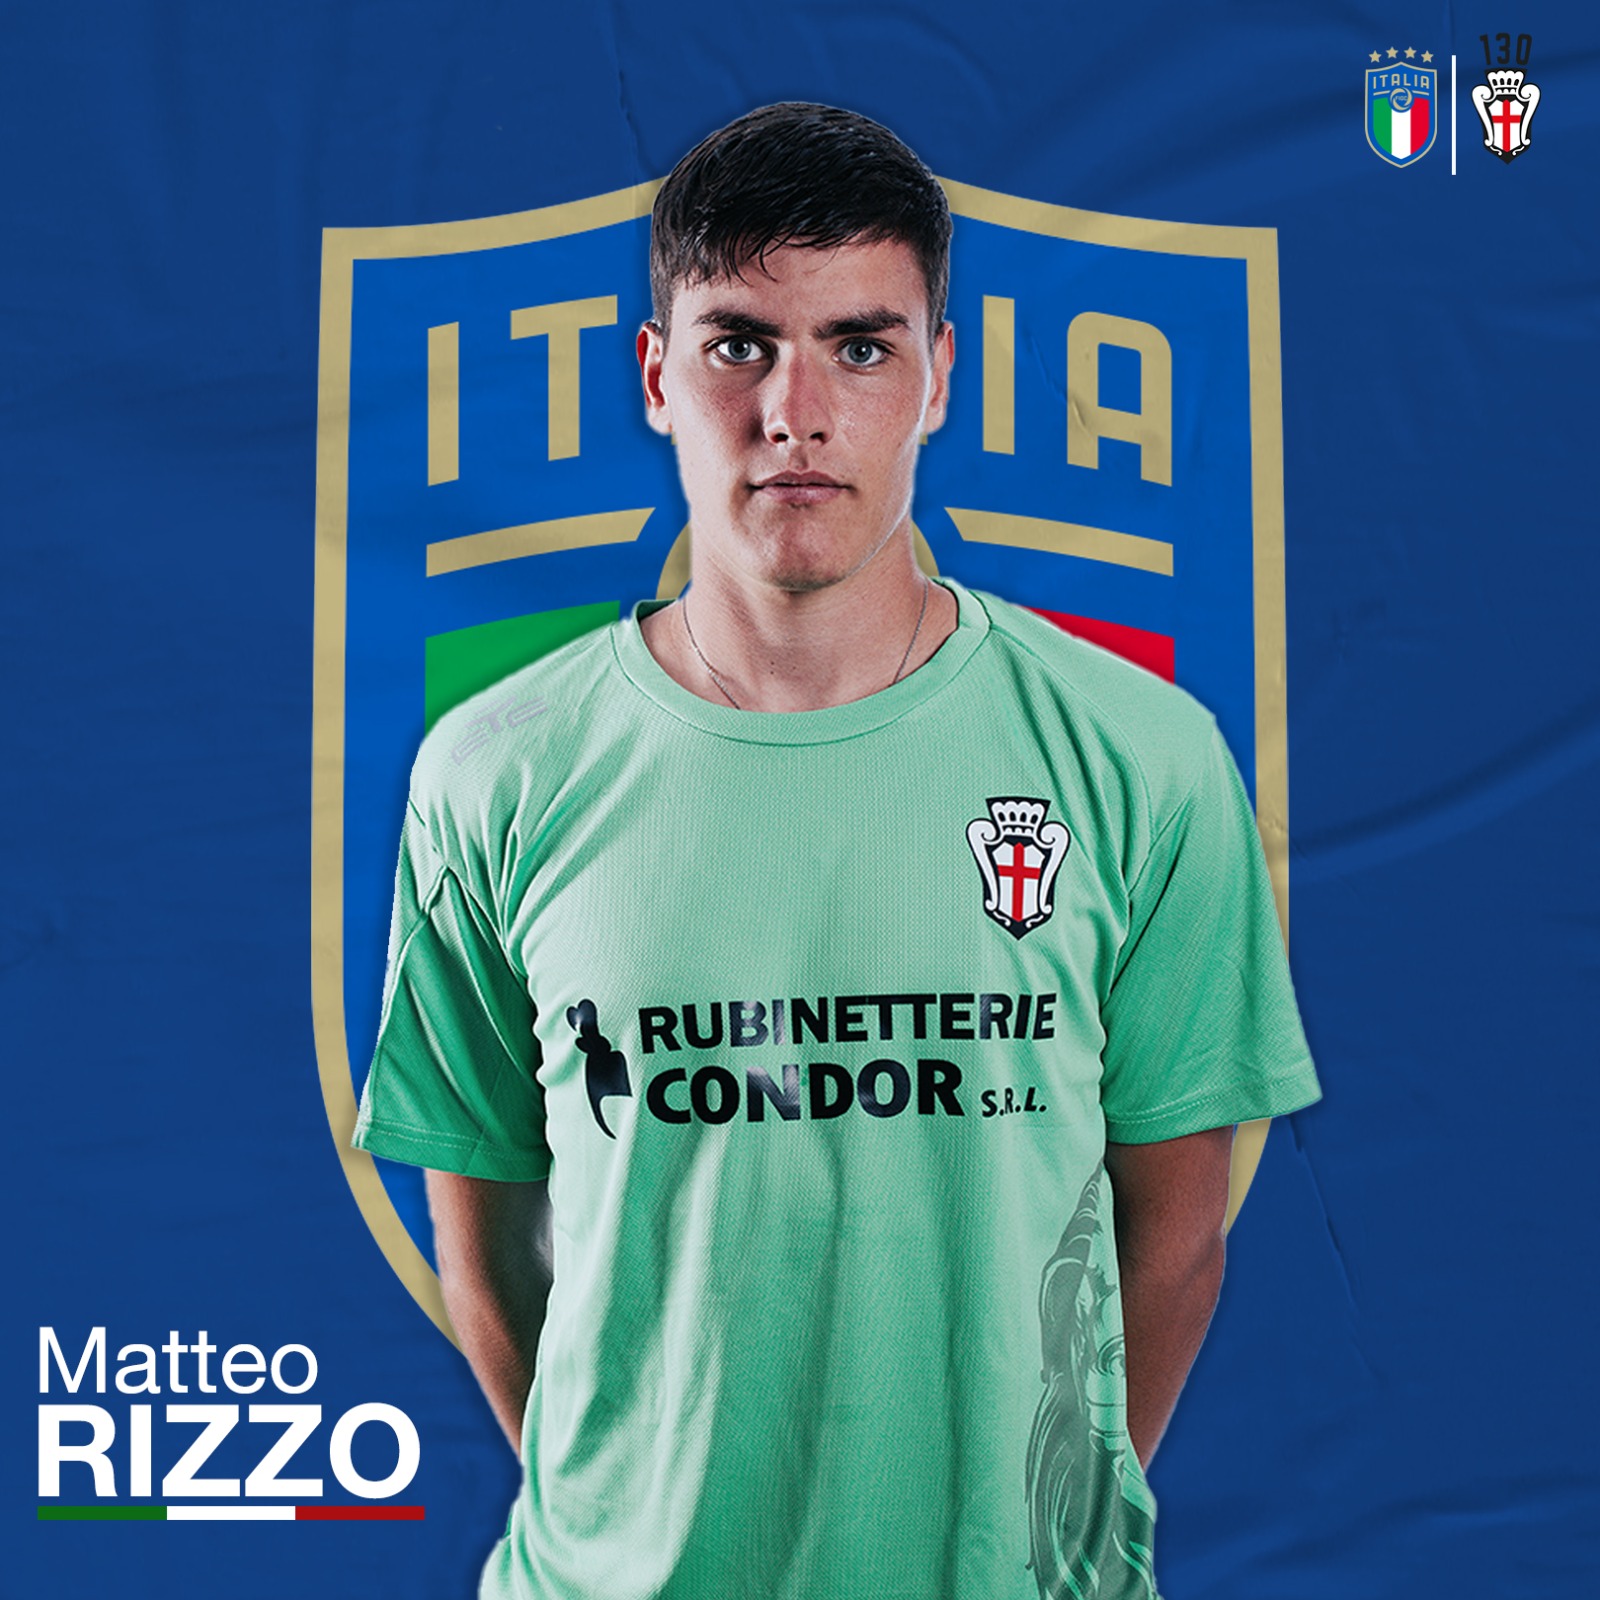 MATTEO RIZZO CONVOCATO IN NAZIONALE U19!   